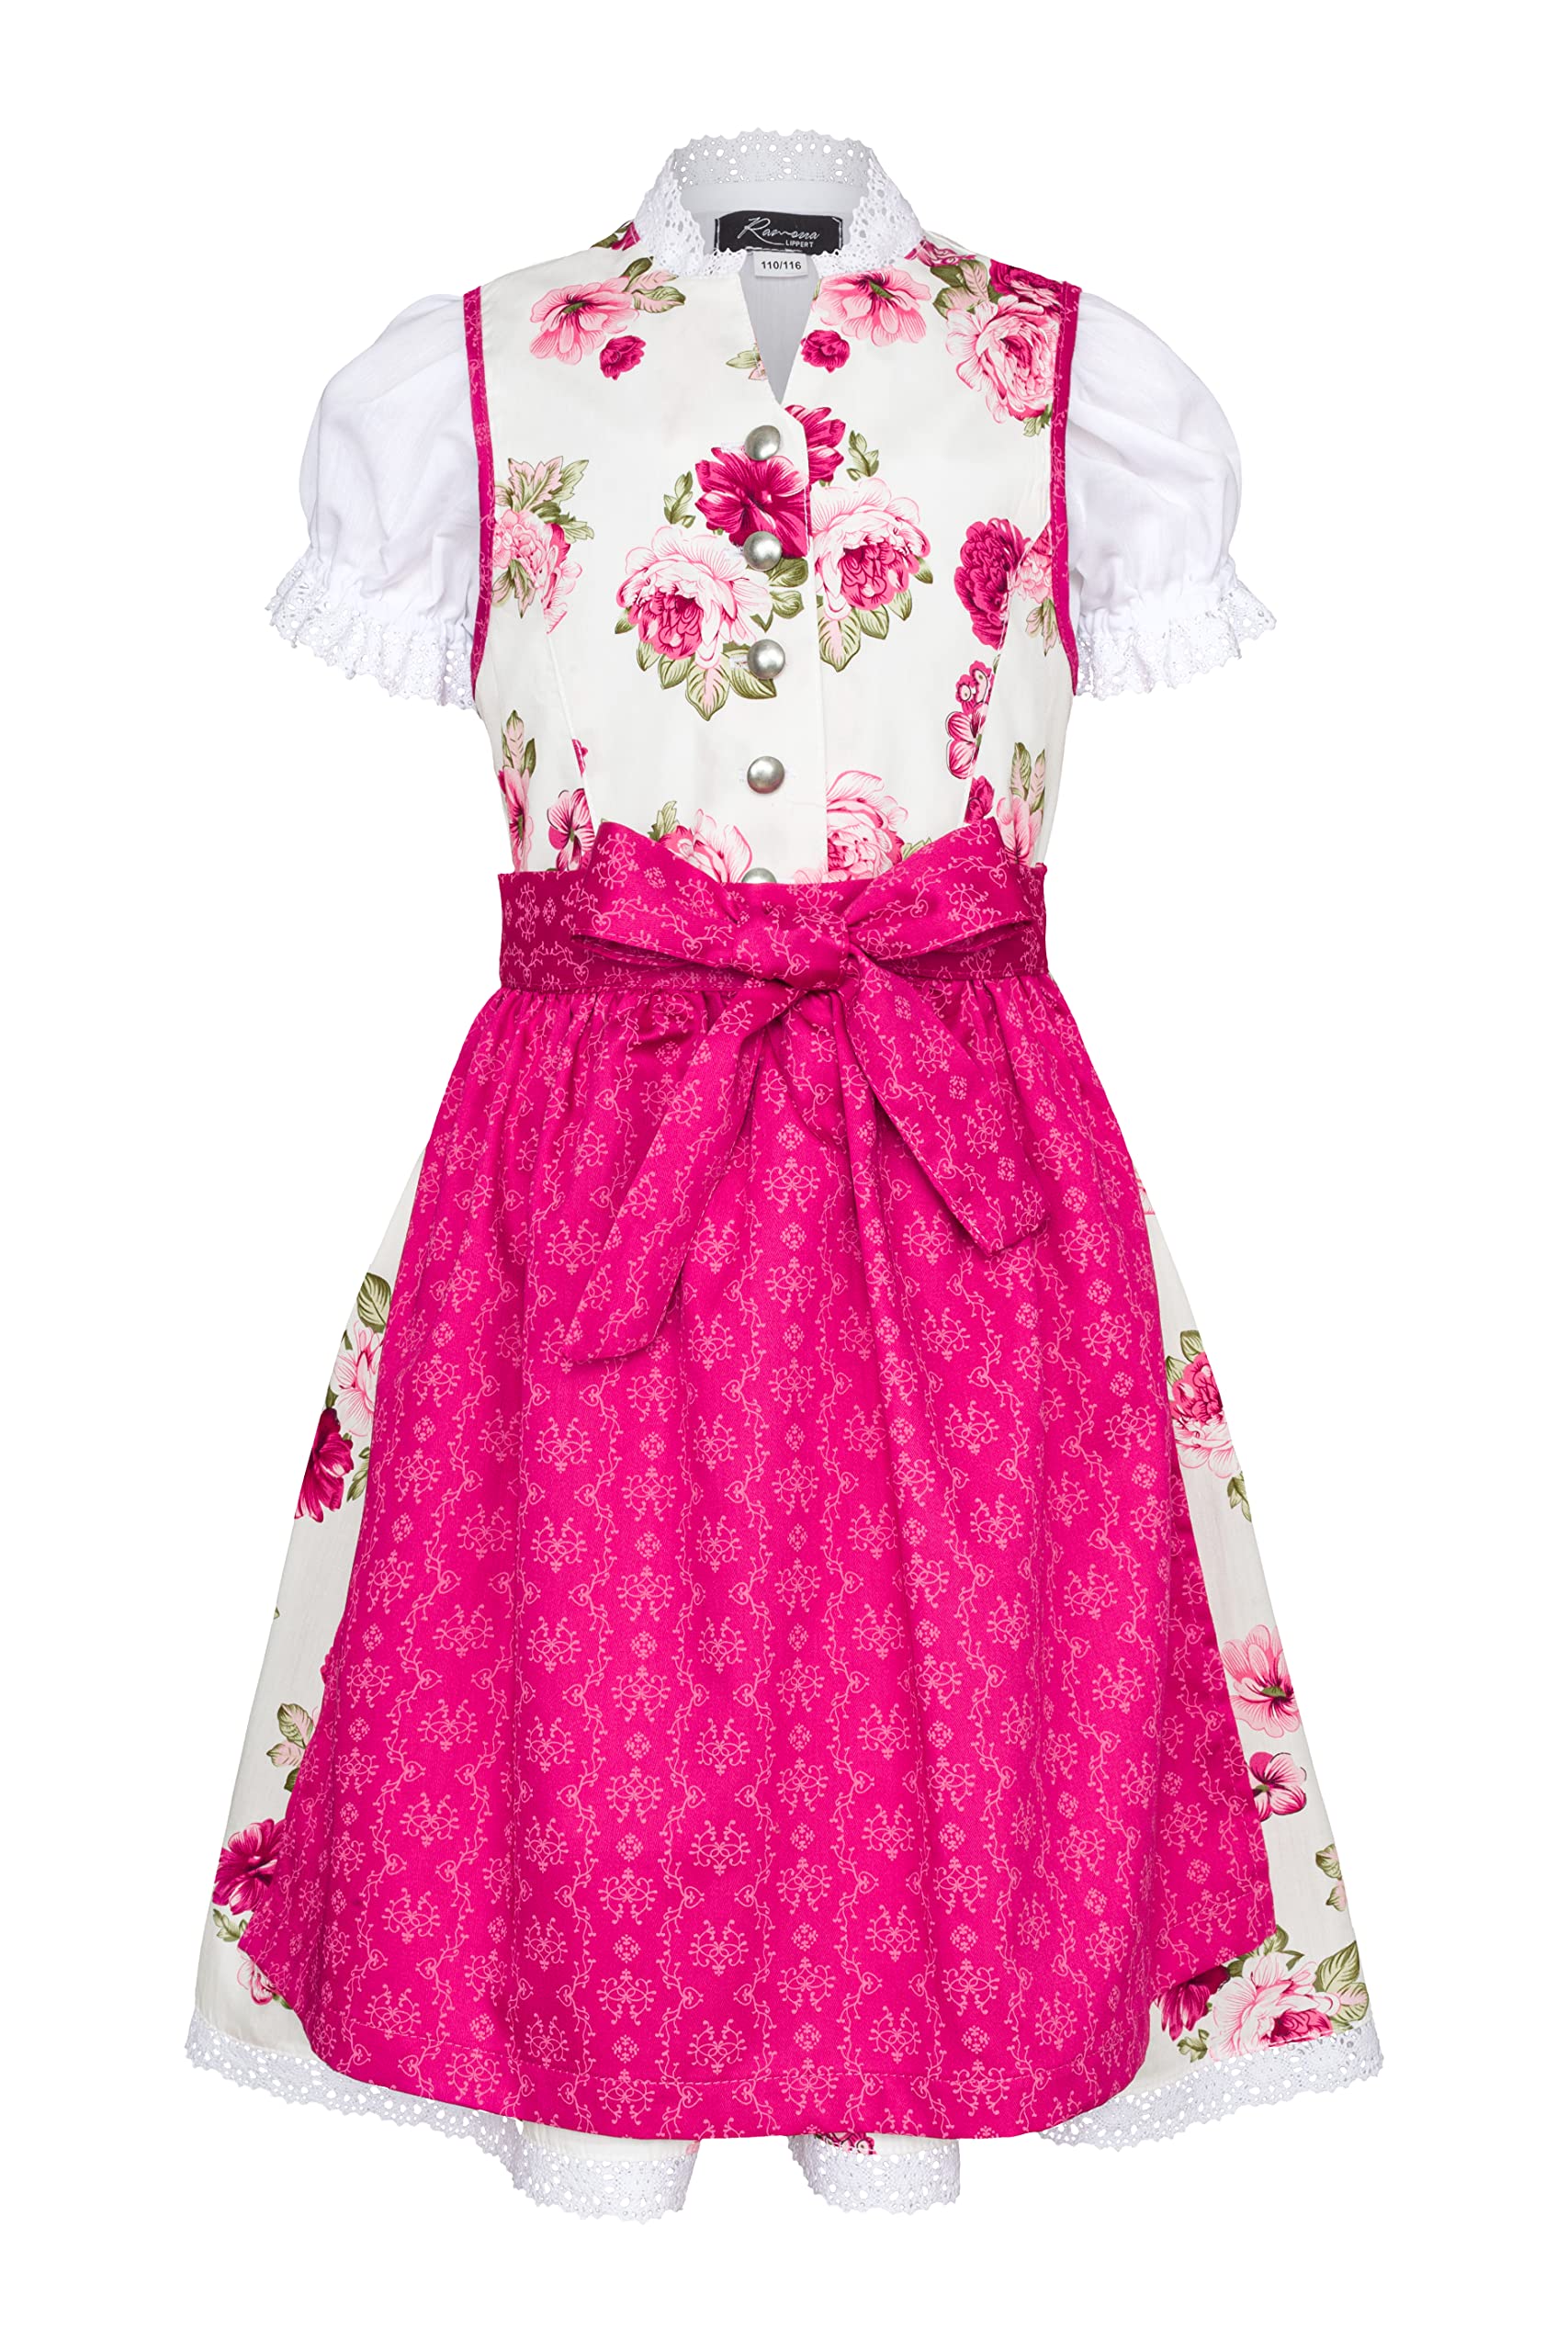 Ramona Lippert® - Kinder Dirndl Für Mädchen - Dirndl Set Tami - Pink + Weiß mit Rosen Bedruckt - Inkl. Kleid, Schürze & Bluse - Festliche Tracht - Größe 86 bis 164 (134/140)